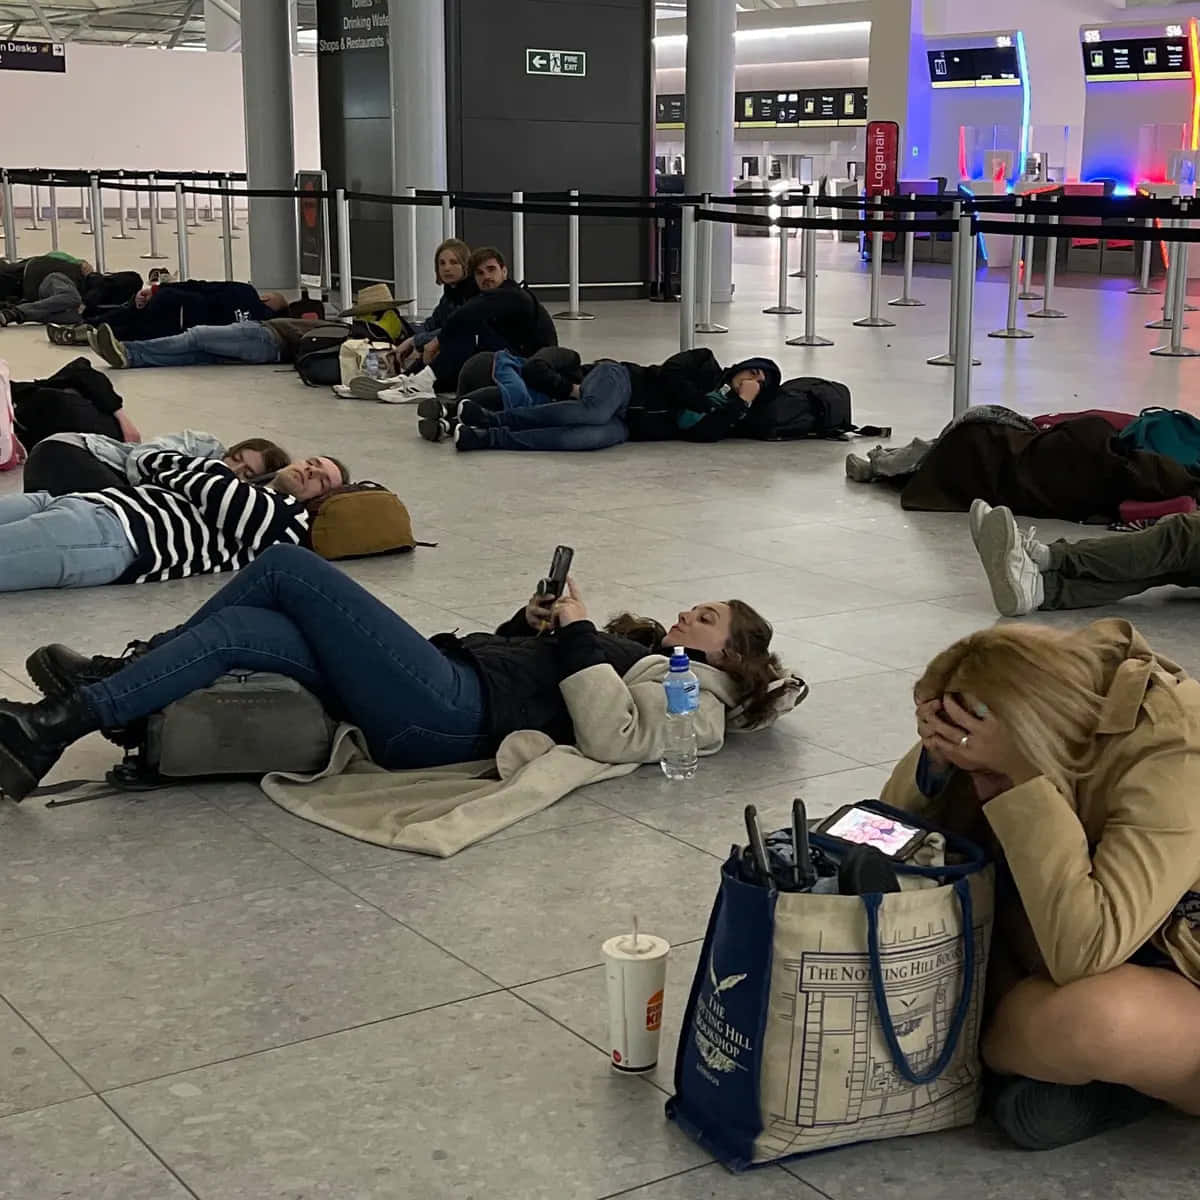 Laspersonas Están Acostadas En El Suelo En Un Aeropuerto.